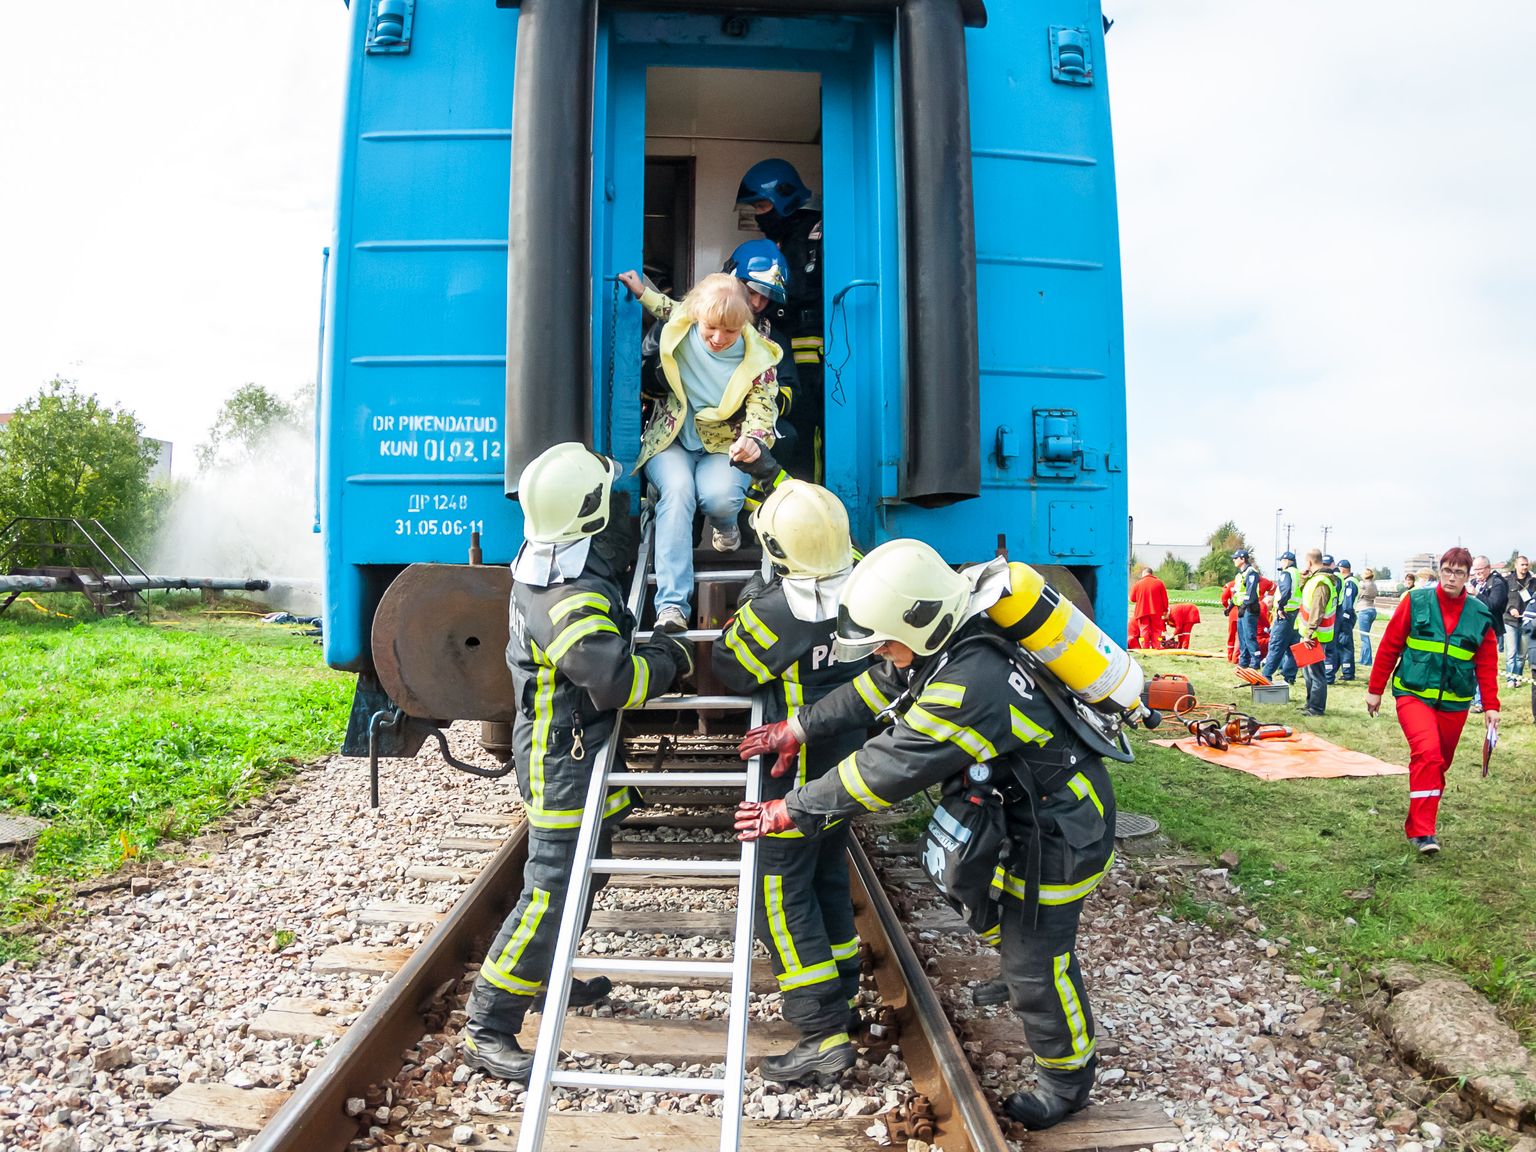 В Эстонии действия в кризисных ситуациях отрабатывались на различных учениях. Это архивный снимок с учений по ликвидации аварии на железной дороге неподалеку от Нарвы.